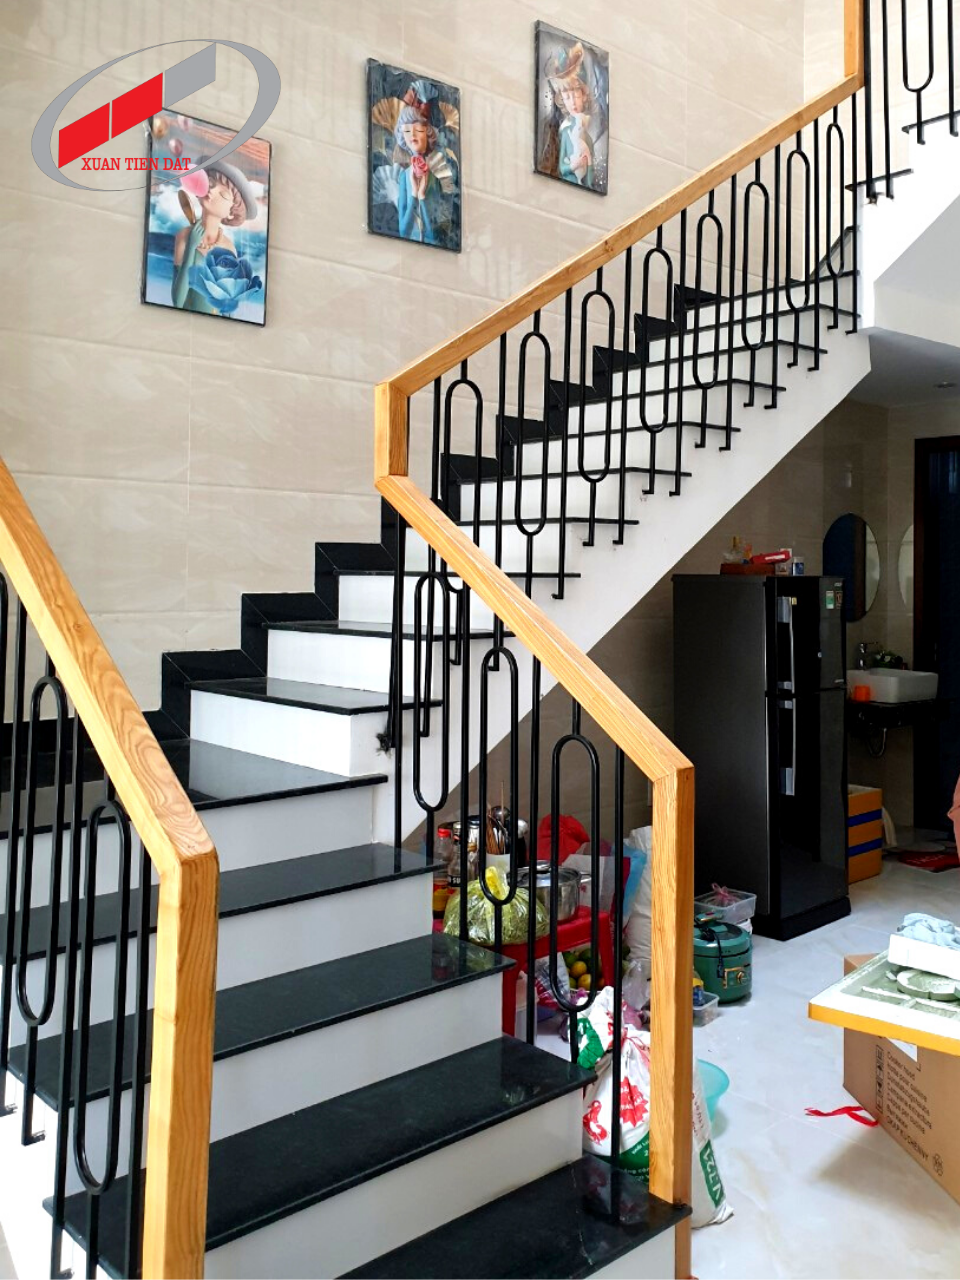 Lan can cầu thang, điểm nhấn quan trọng tôn lên vẻ đẹp cho toàn bộ không gian nội thất của ngôi nhà. Hãy khám phá và lựa chọn cho mình một mẫu lan can cầu thang phù hợp với phong cách của ngôi nhà của bạn.